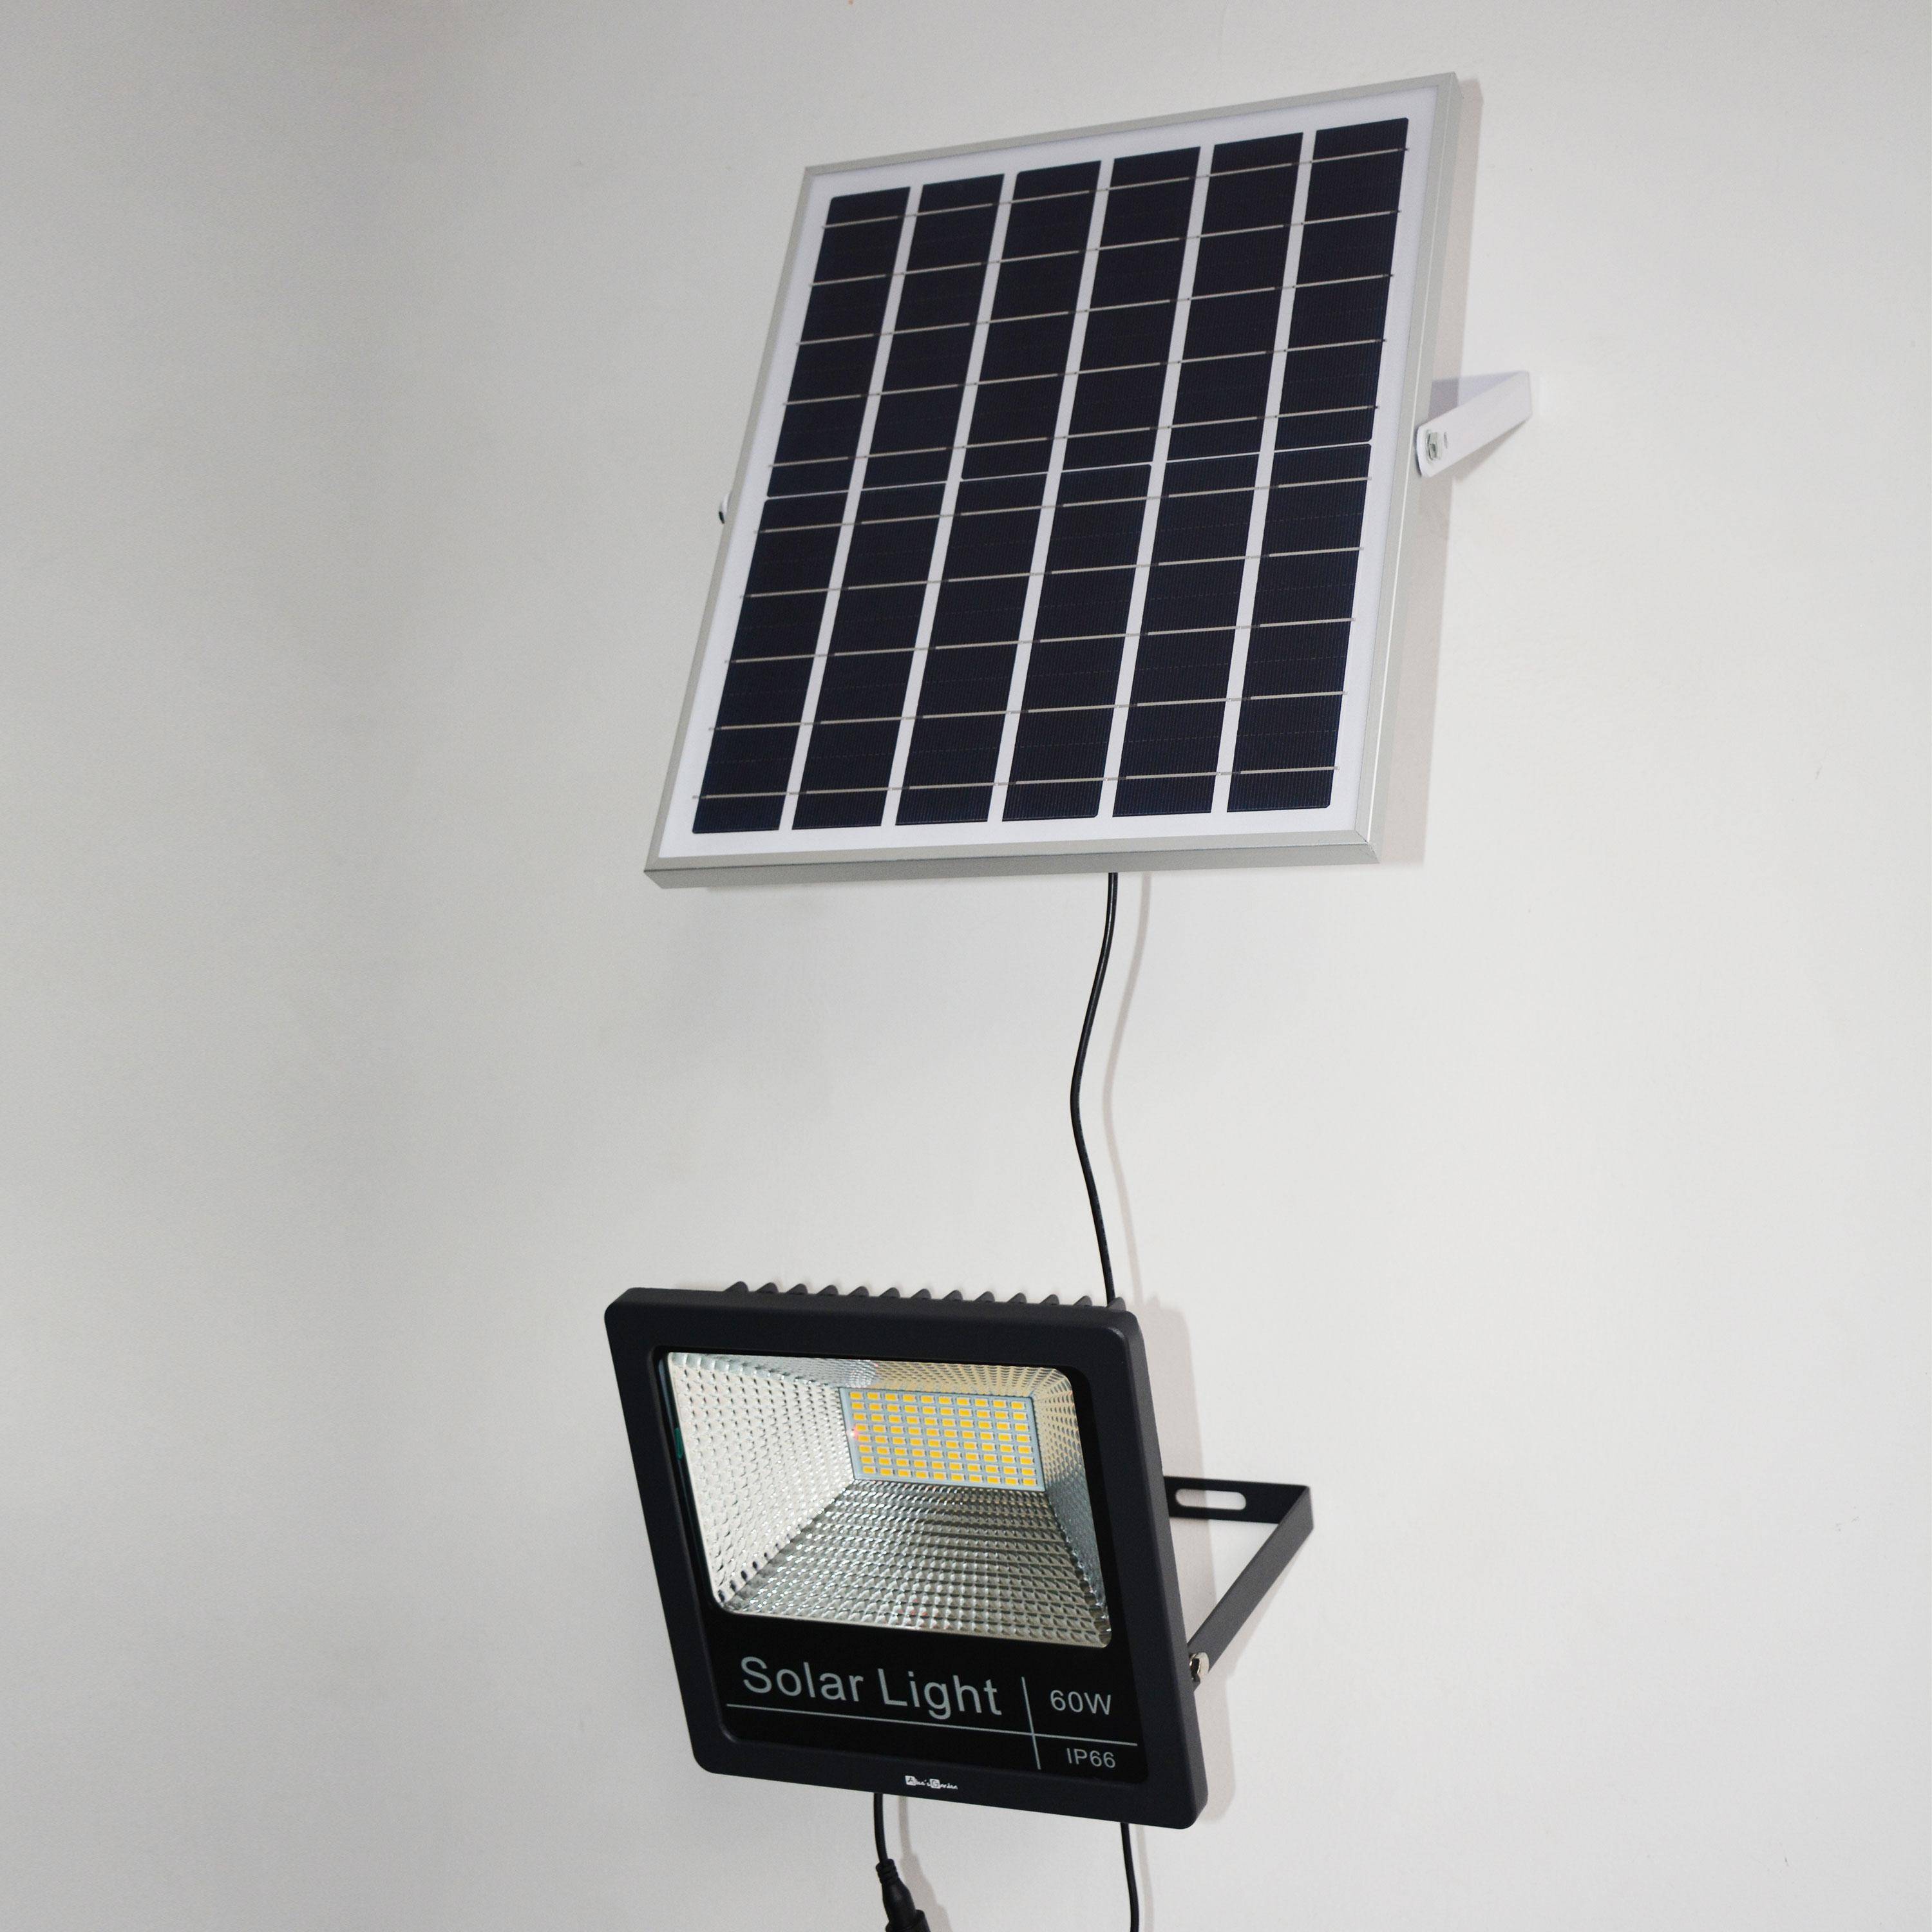 Projecteur solaire LED 40W avec panneau solaire télécommandé blanc chaud, lampe résistante à la pluie et autonome, spot extra puissant 1500 lumens équivalent 125W Photo5